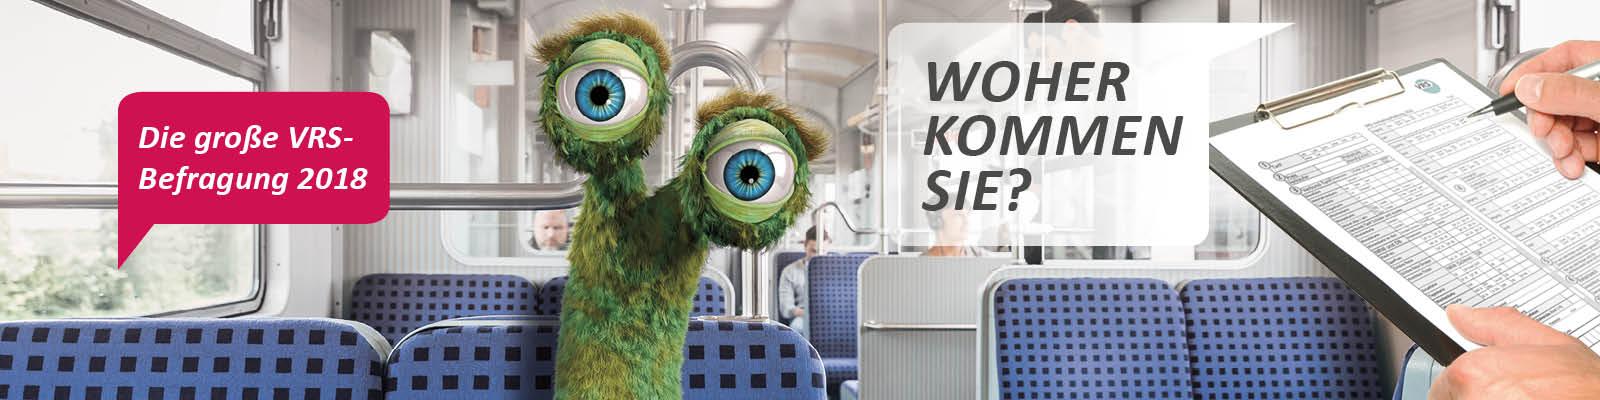 Grner Alien mit groen blauen Augen sitz in einem Zug und wird befragt